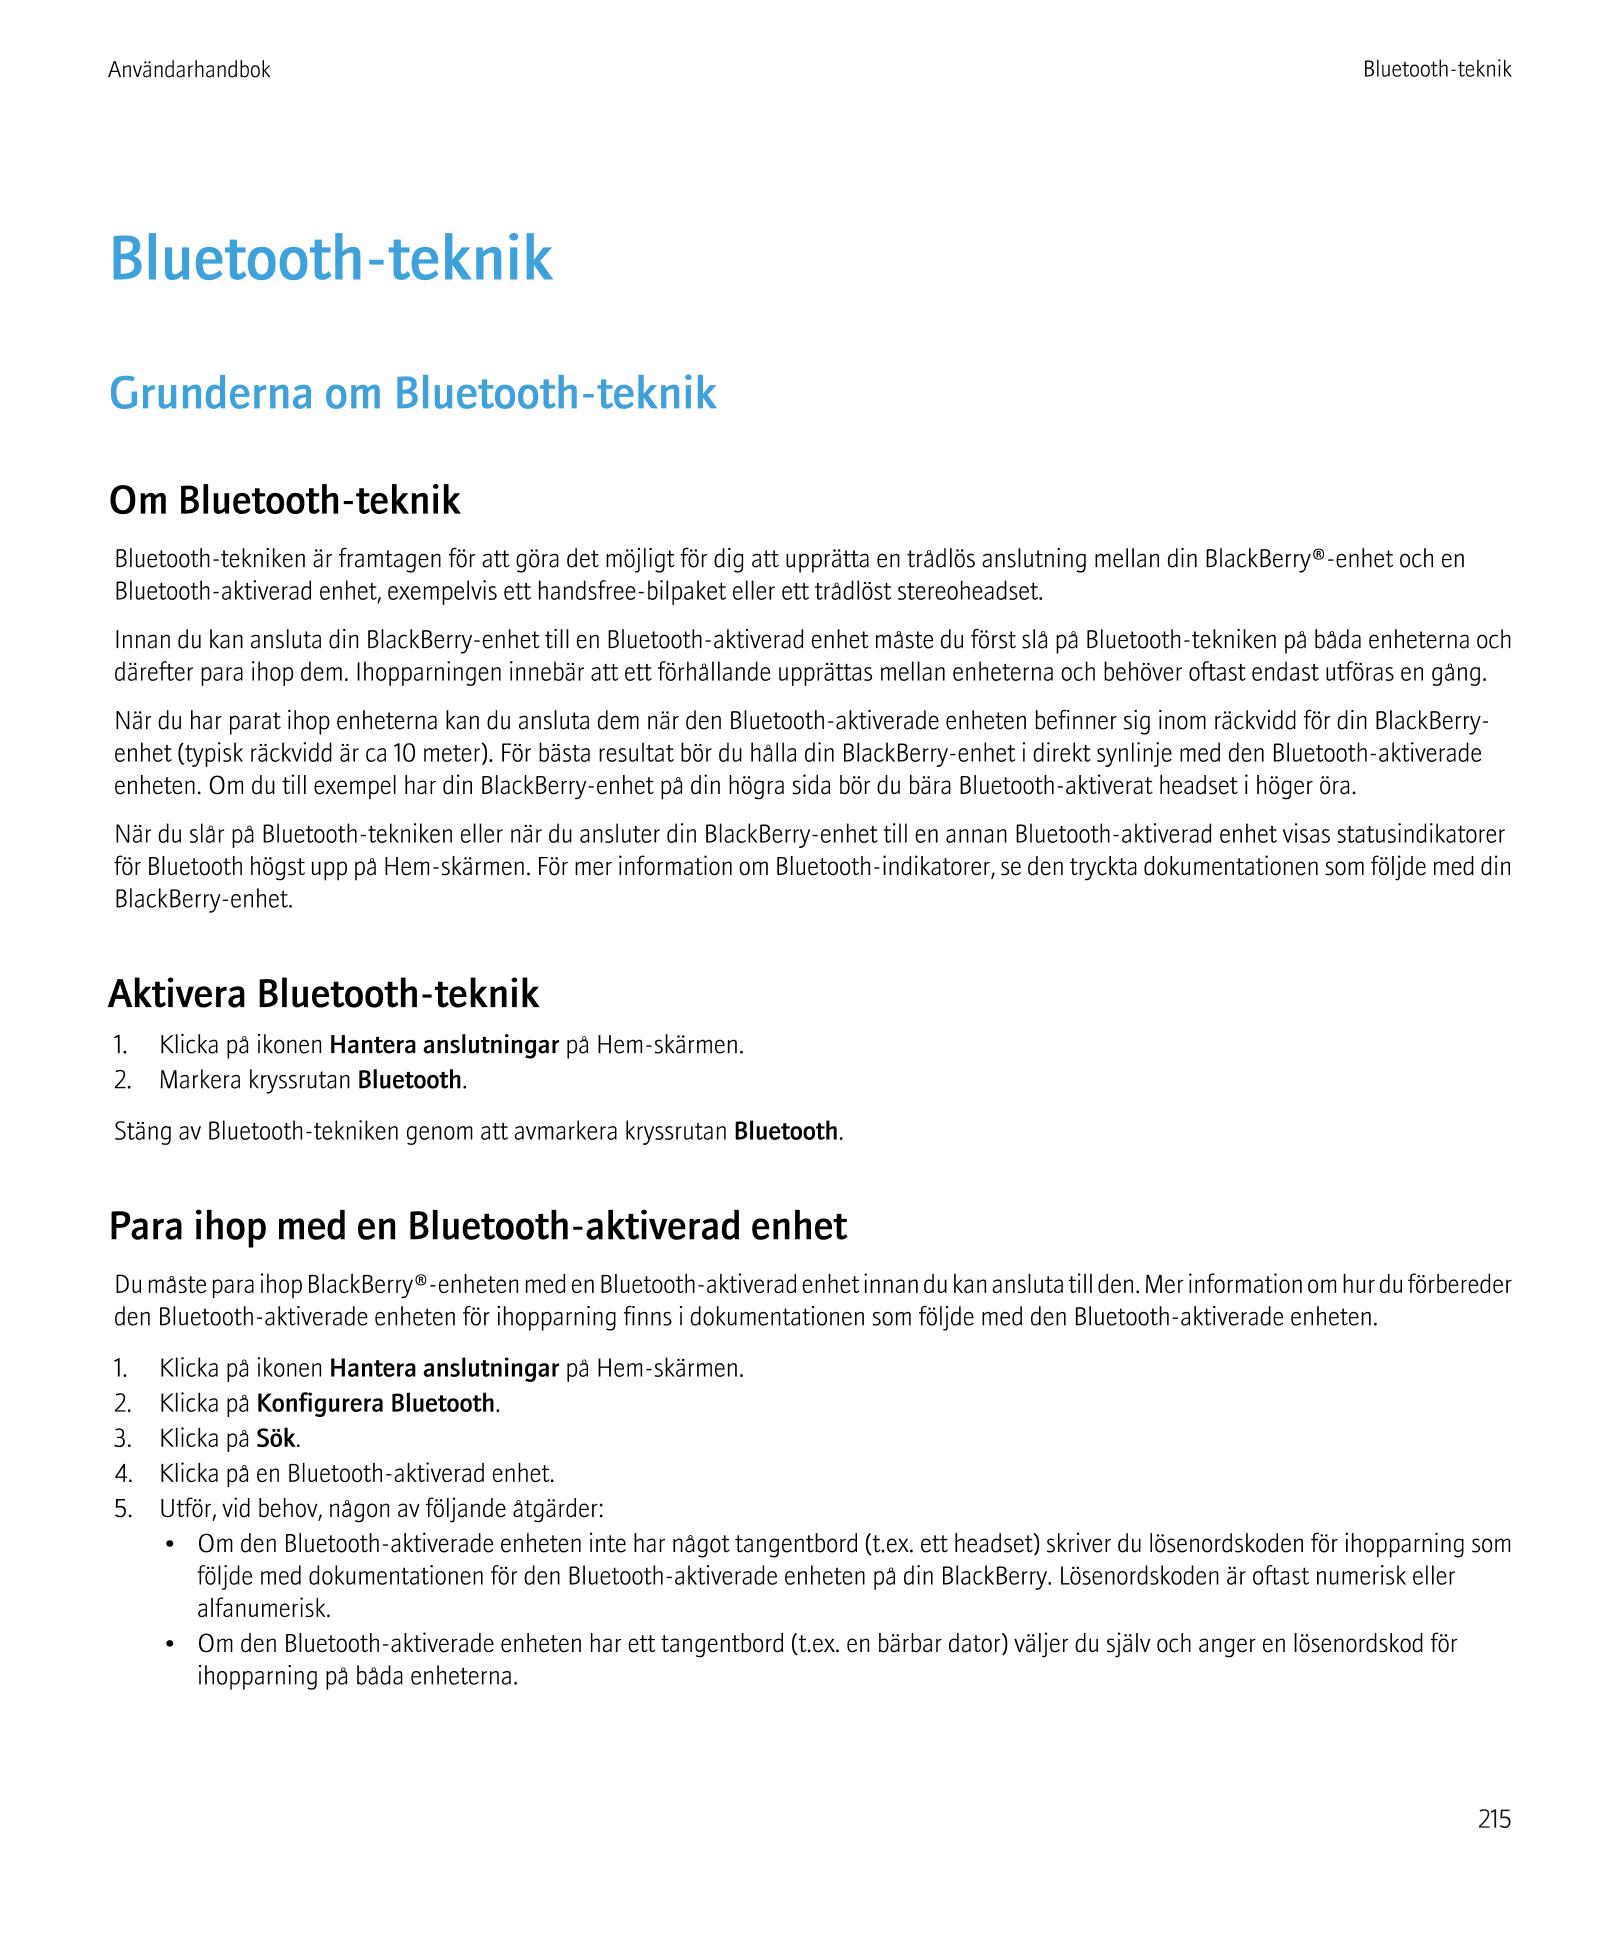 Användarhandbok Bluetooth-teknik
Bluetooth-teknik
Grunderna om Bluetooth-teknik
Om Bluetooth-teknik
Bluetooth-tekniken är framta